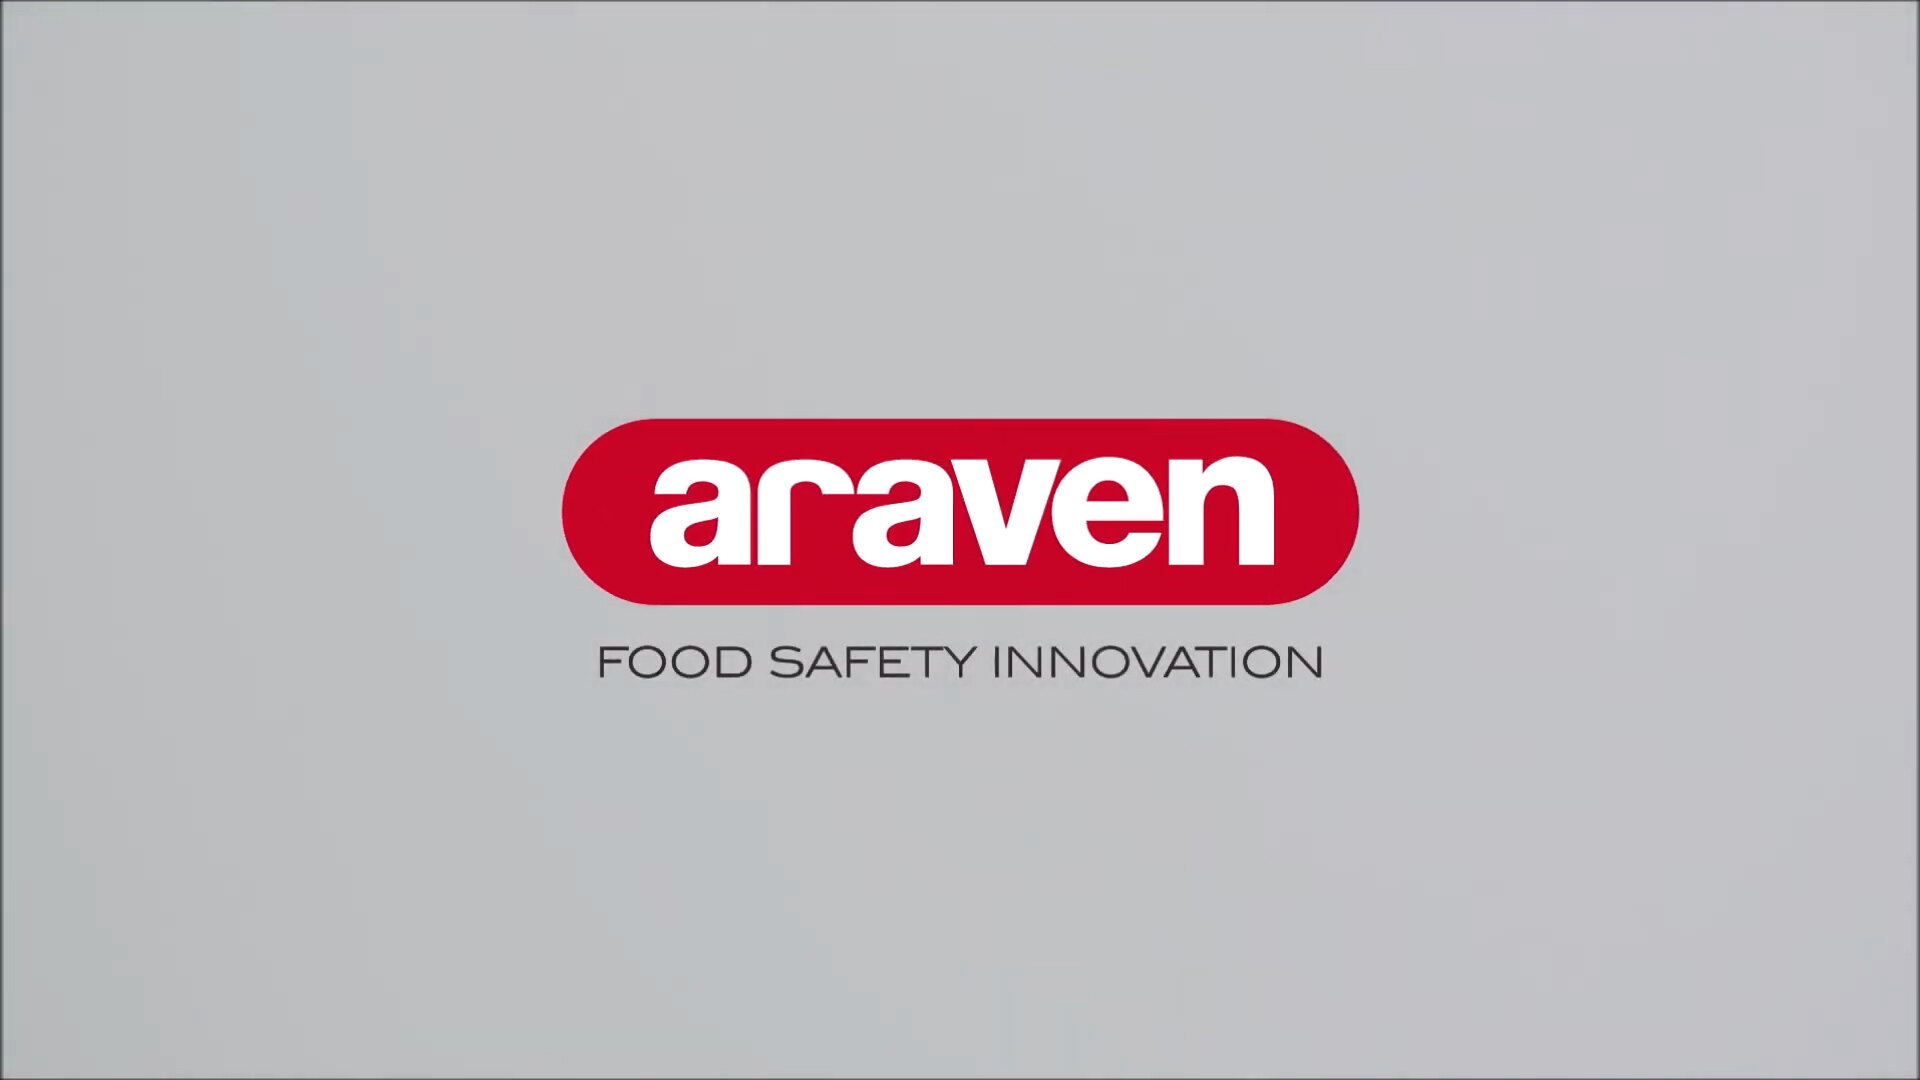 Araven 1075 11-1/2-Quart White Plastic Mixing Bowl